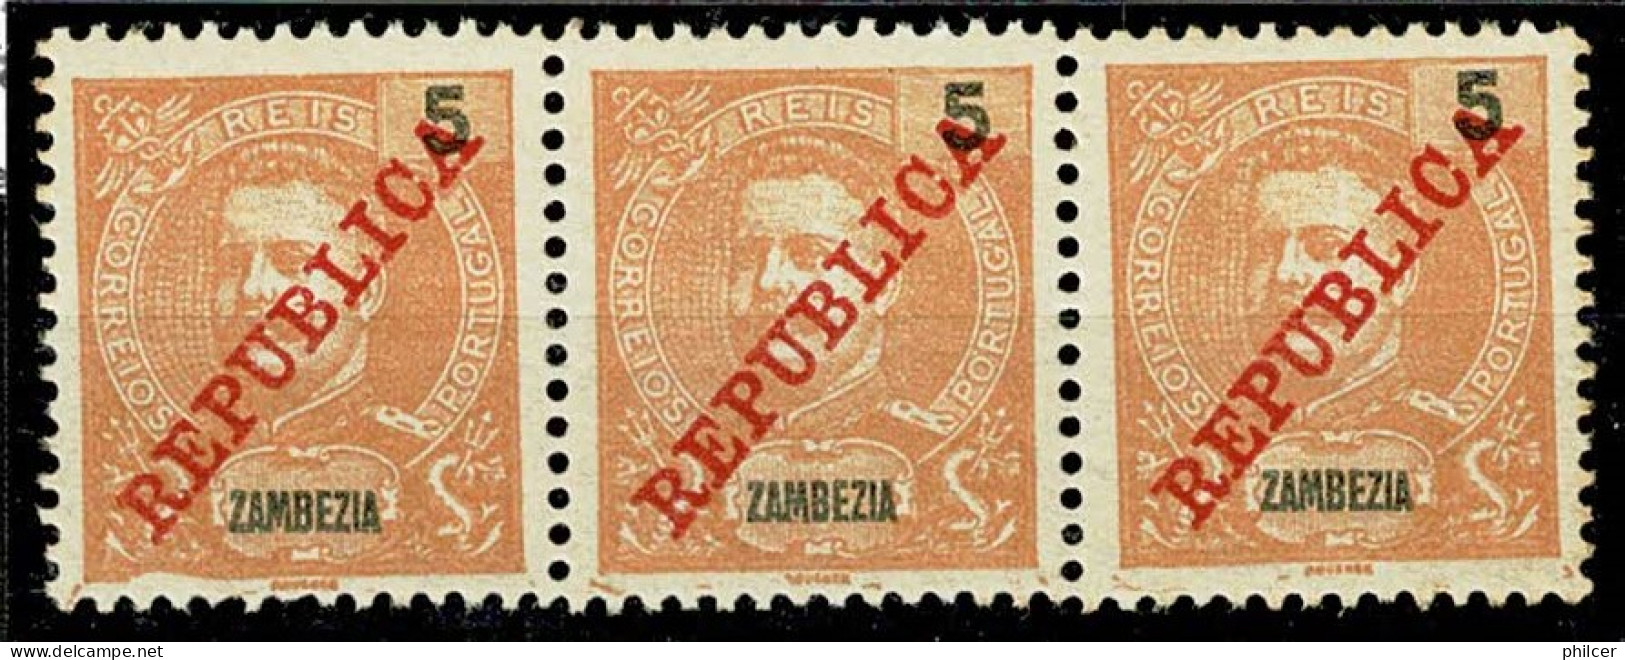 Zambézia, 1911, # 56, MH - Zambèze